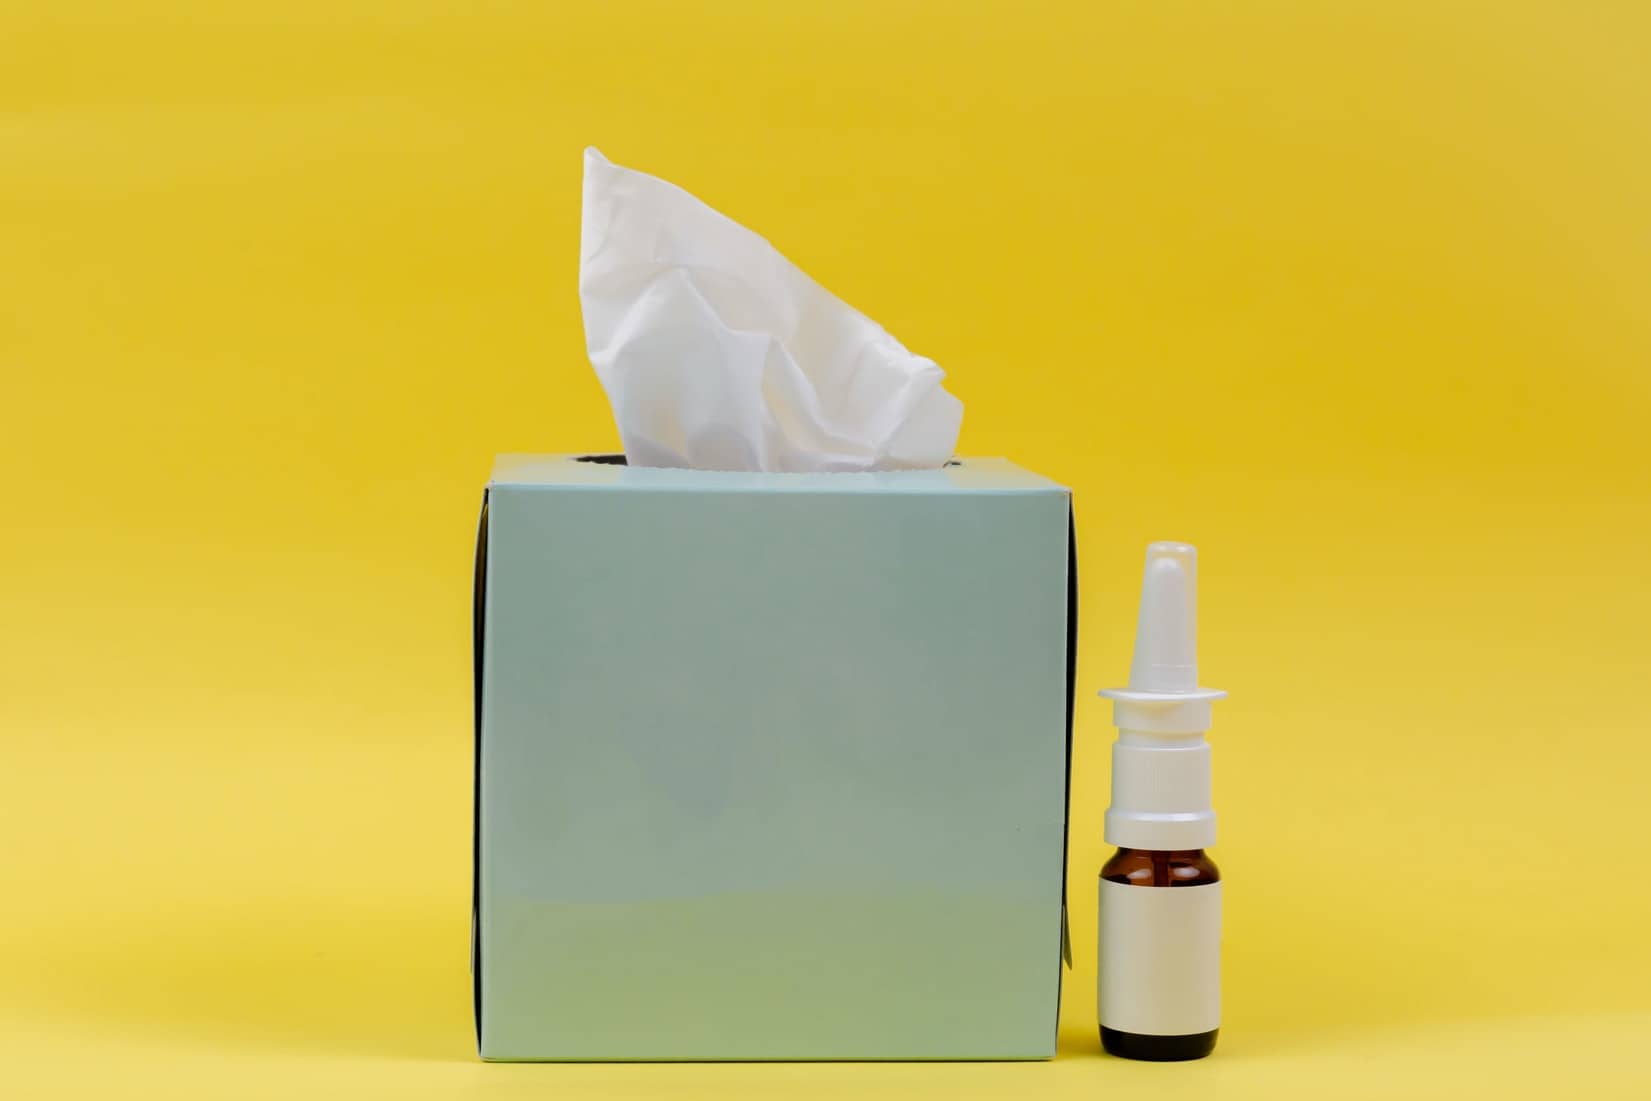 nasal spray and box of tissues